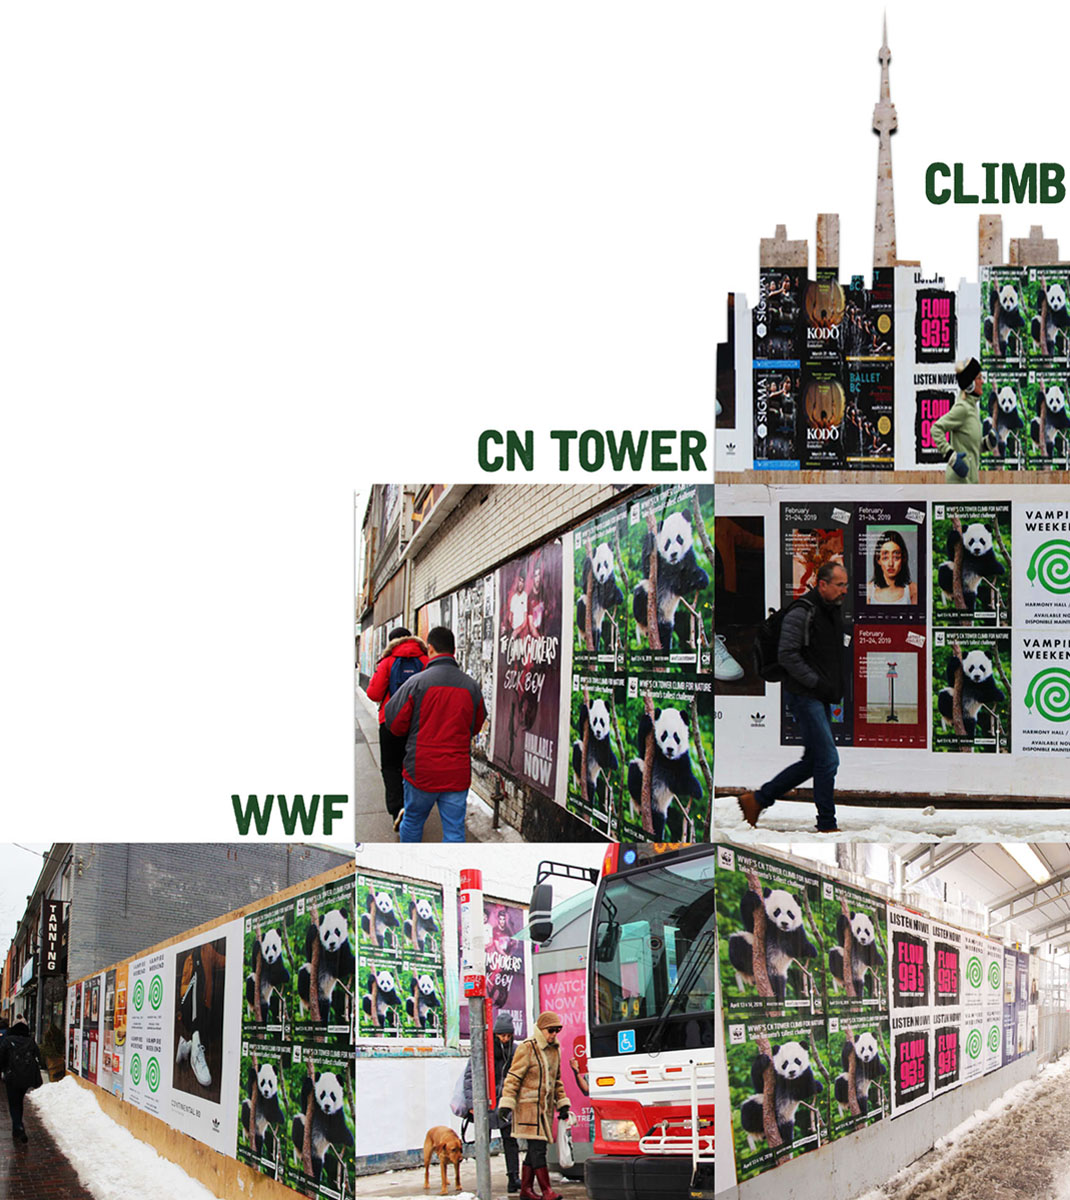 WWF CN Tower Climb Social Media Post